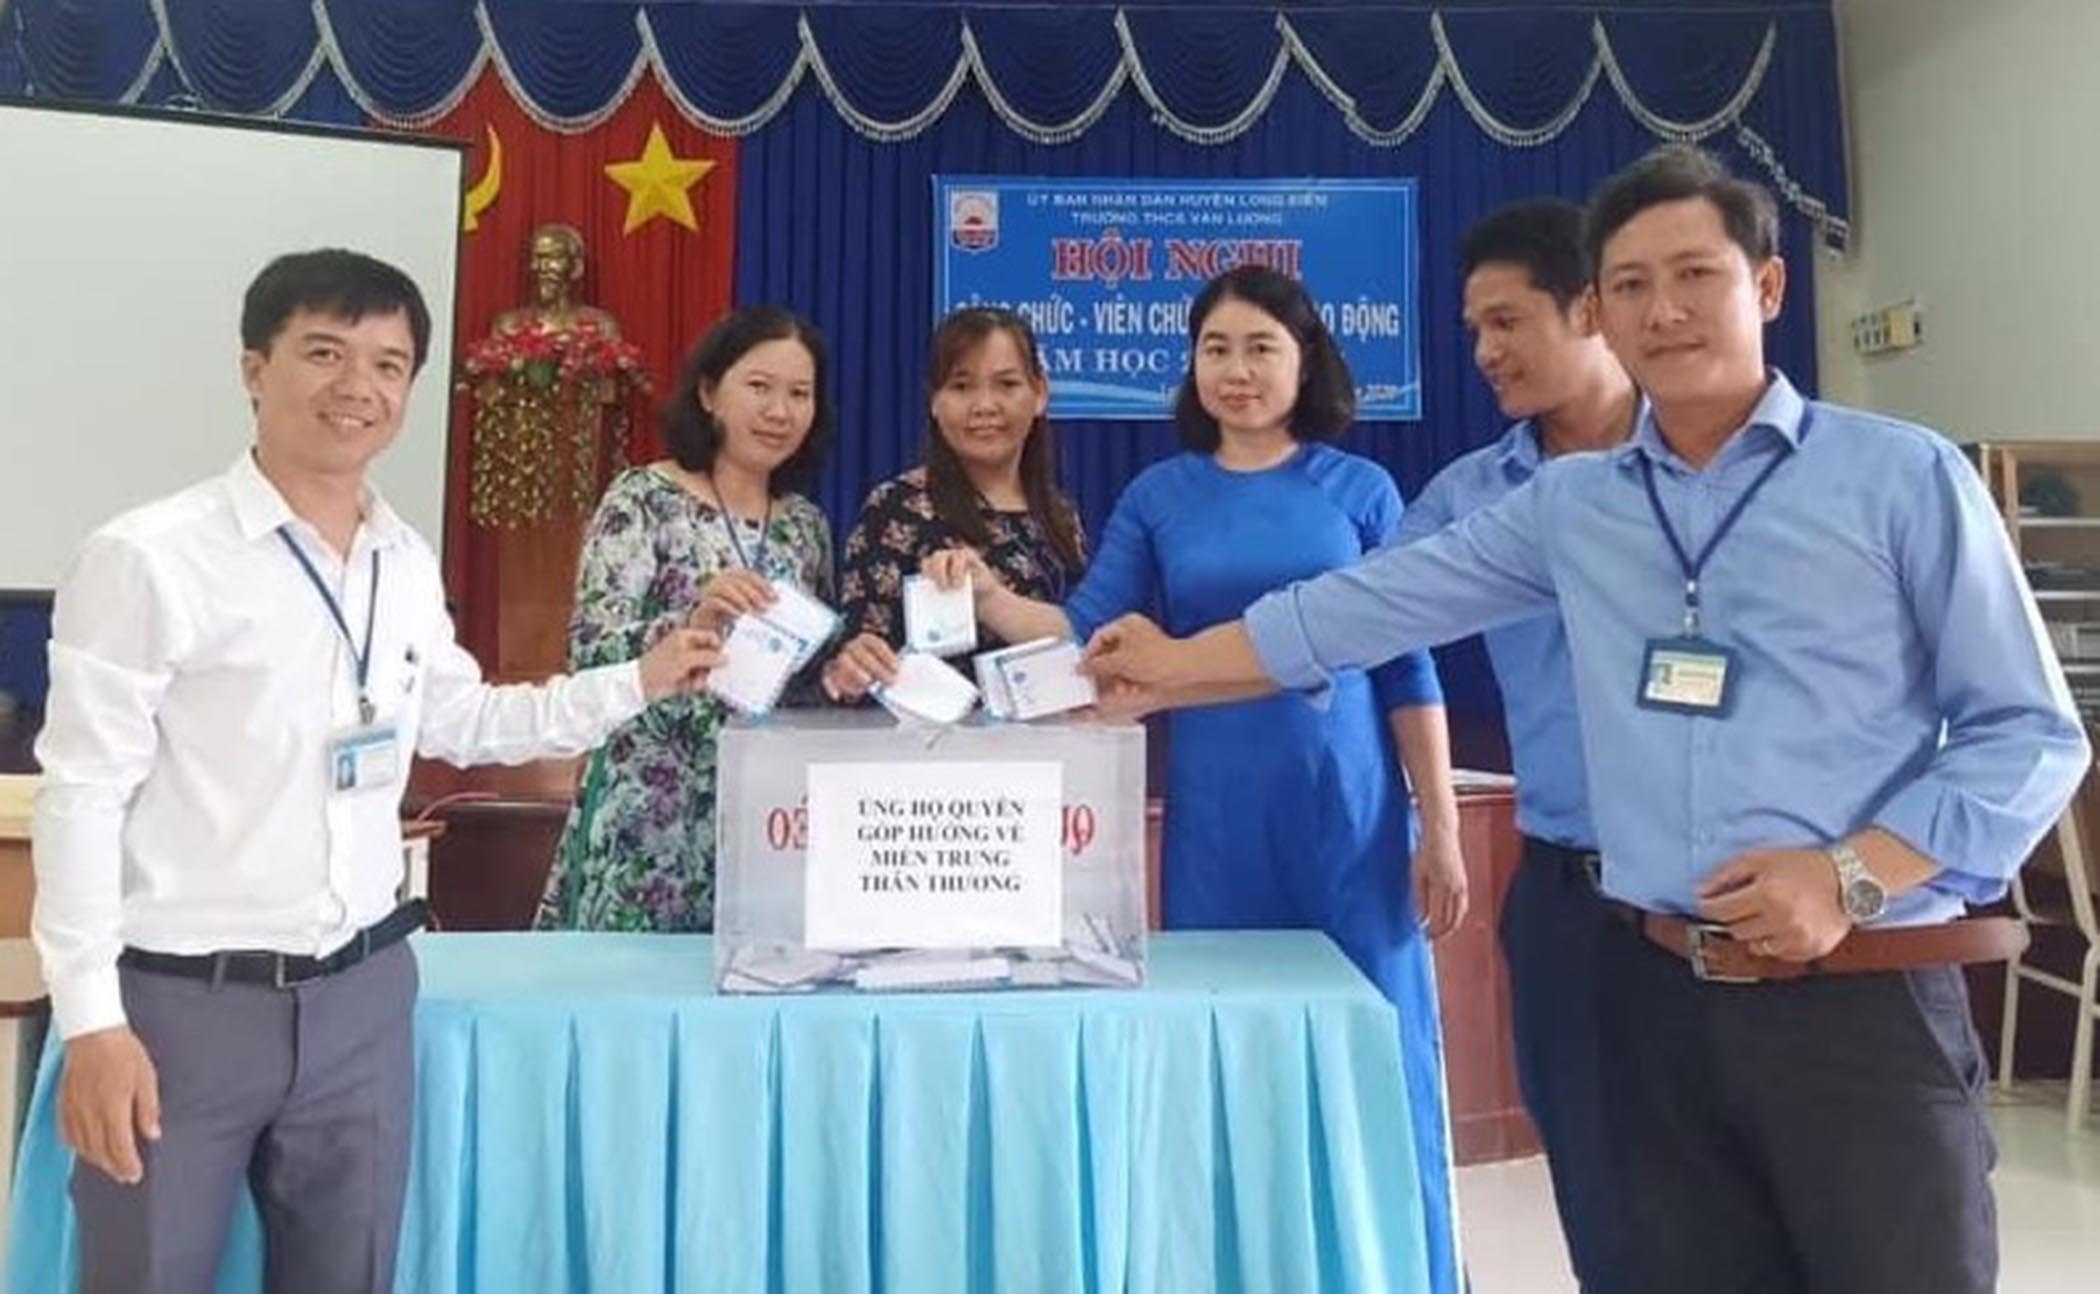 Cán bộ, giáo viên Trường THCS Văn Lương đóng góp tiền ủng hộ đồng bào miền Trung. Ảnh: NGỌC TUYỀN